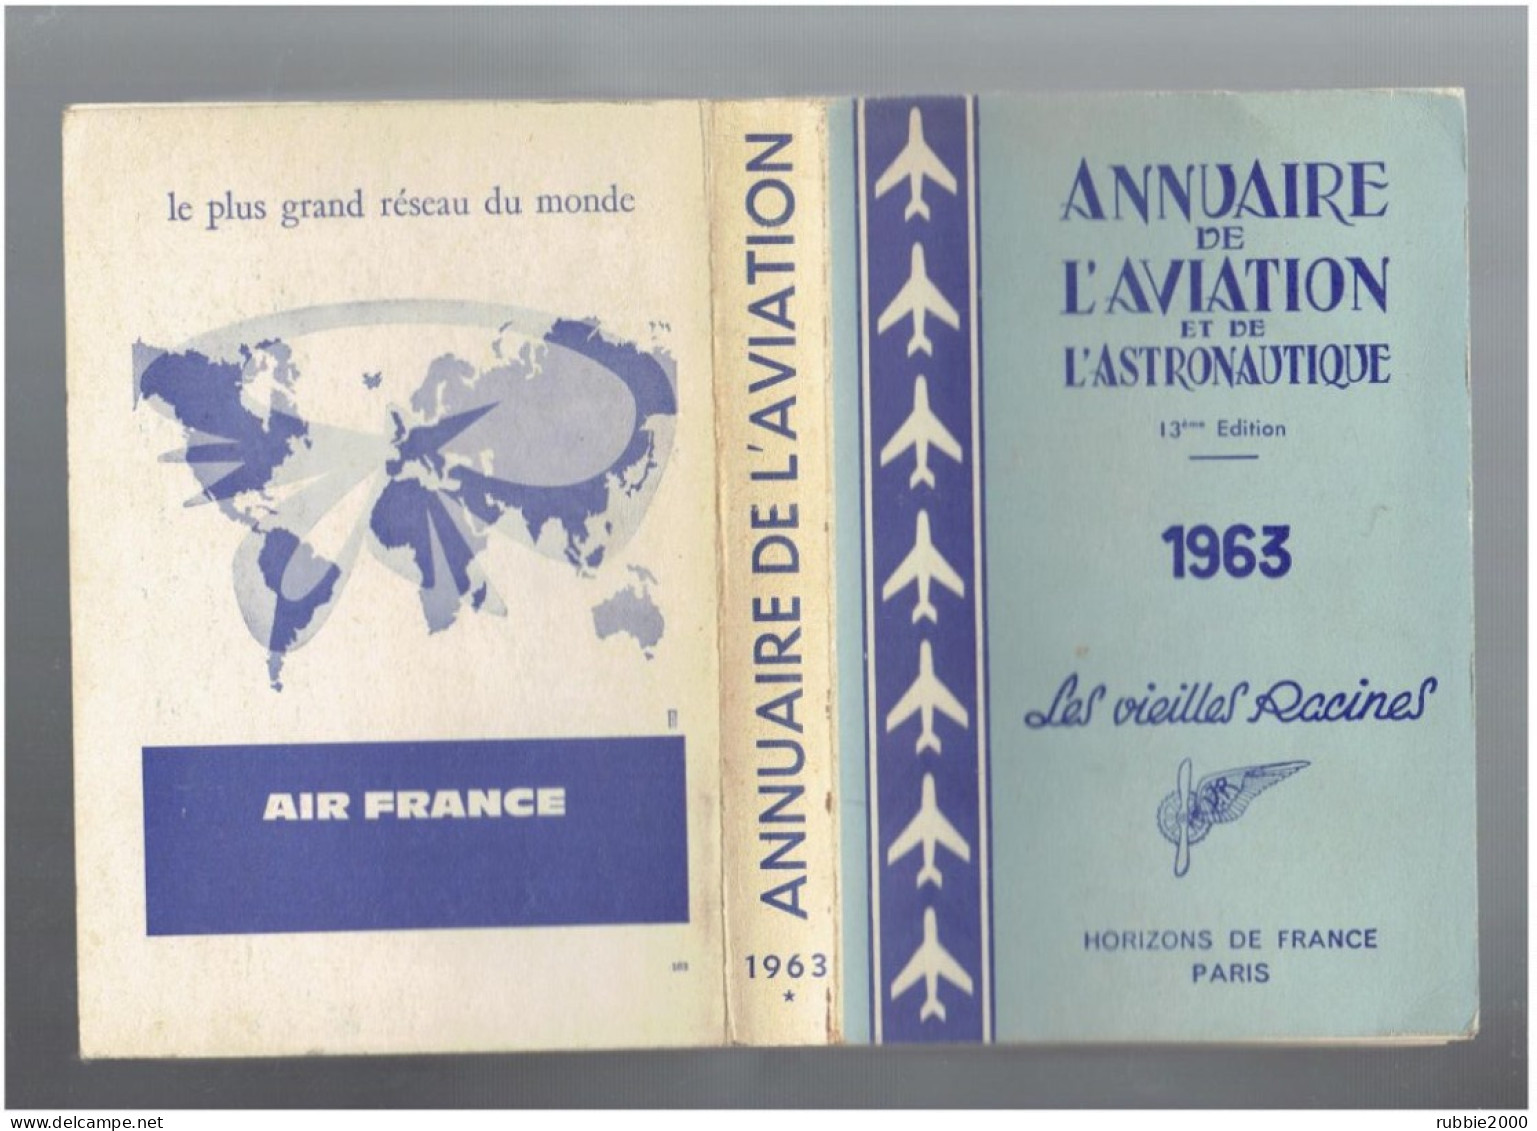 1963 ANNUAIRE DE L AVIATION ET DE L ASTRONAUTIQUE LES VIEILLES RACINES HORIZONS DE FRANCE AVION - AeroAirplanes